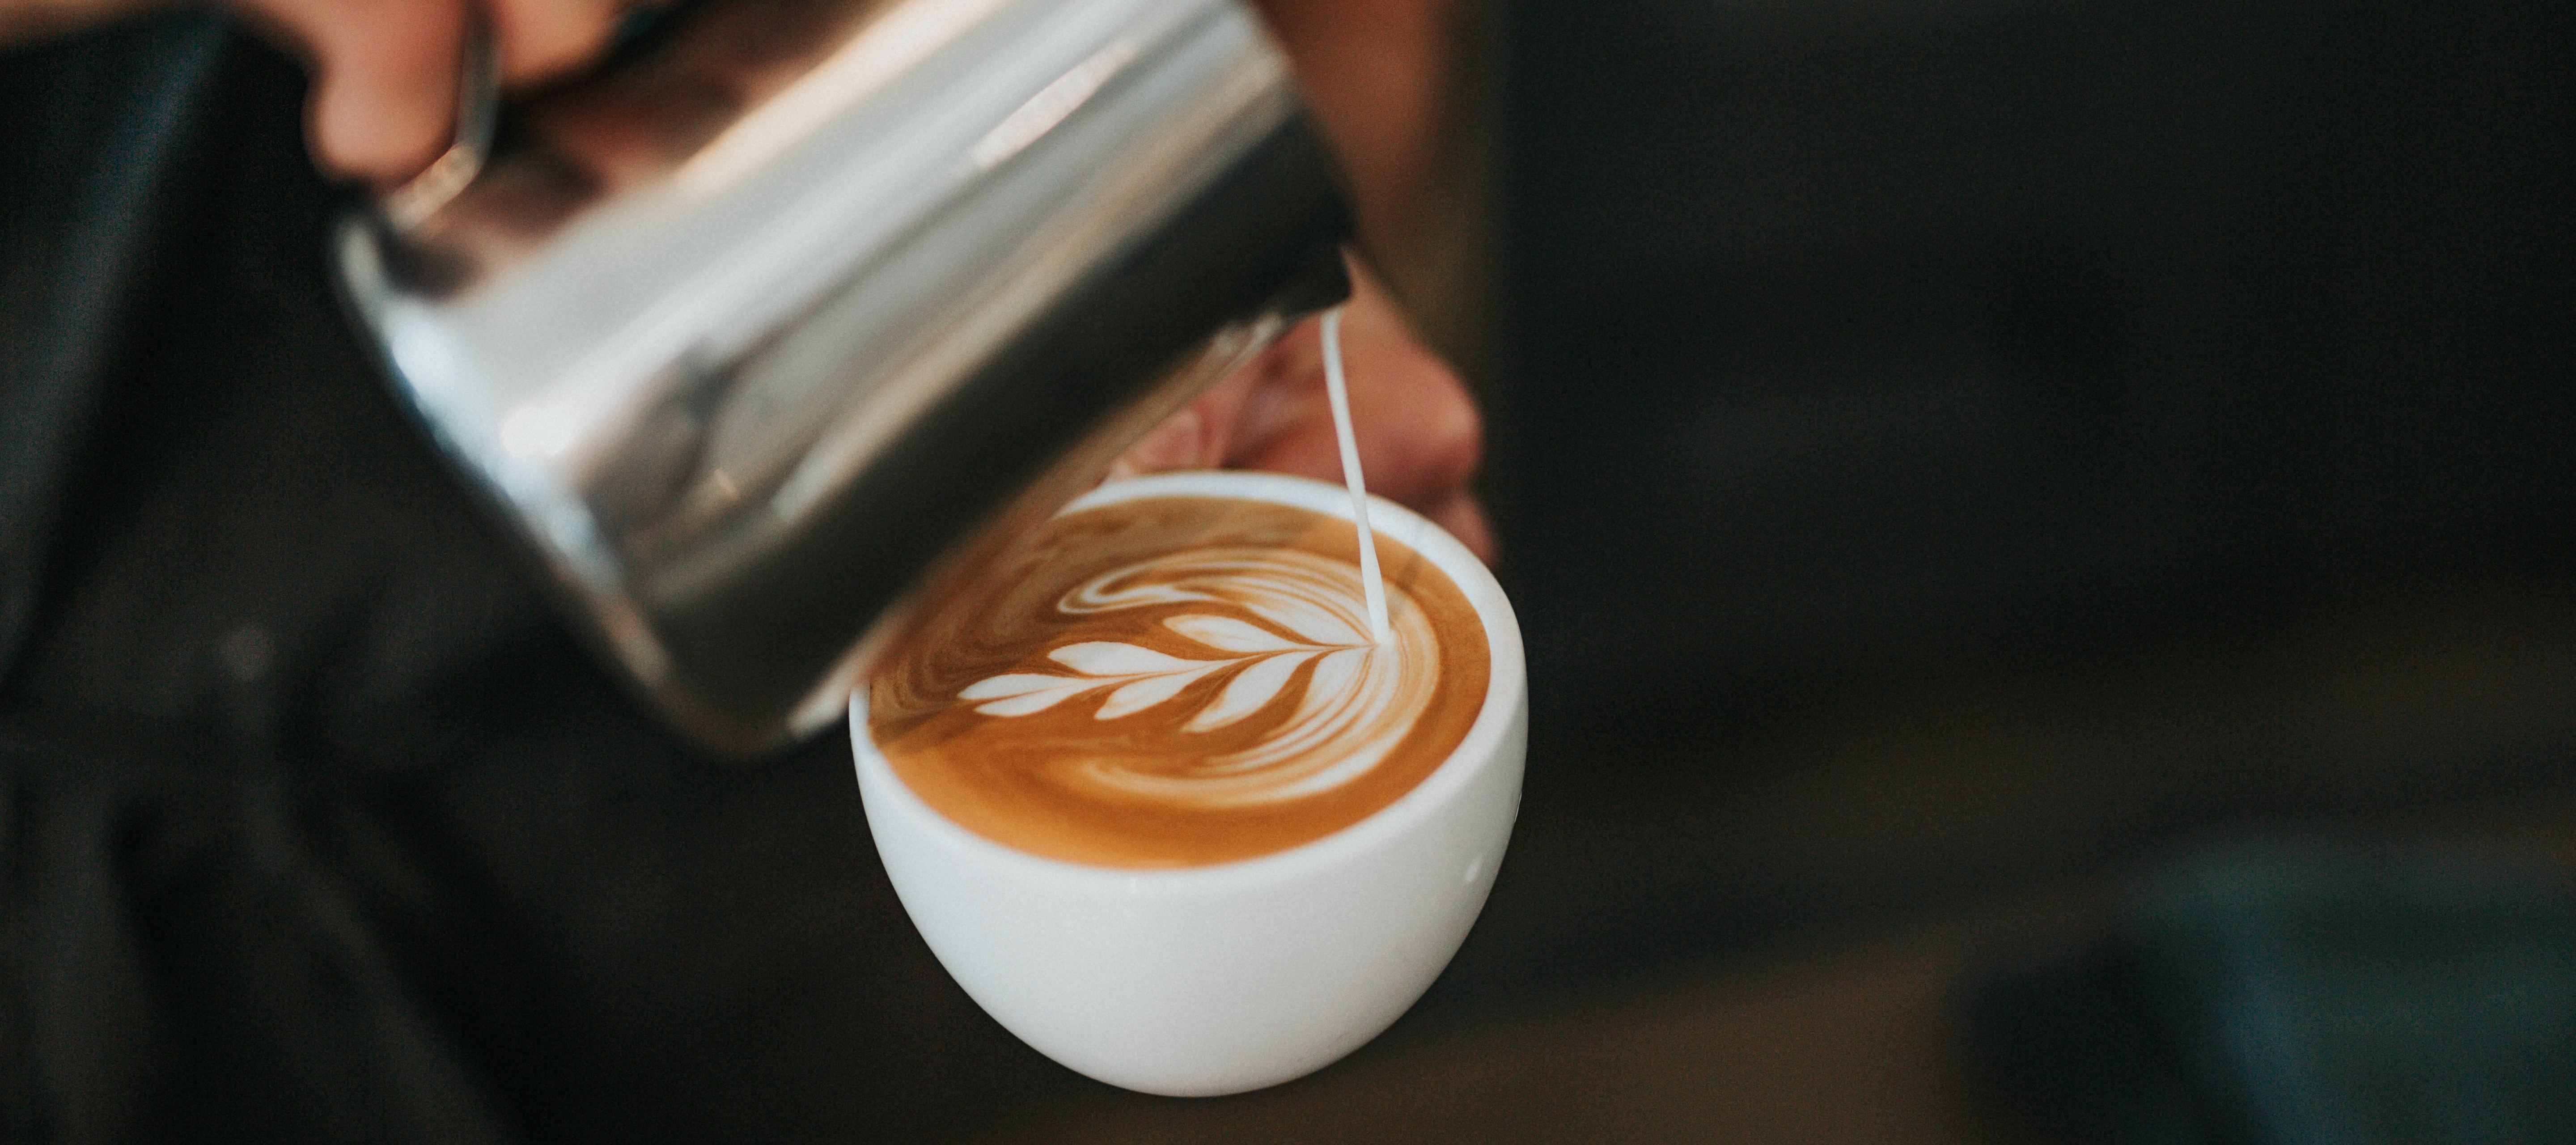 o2 More Local: Der kostenlose Kaffee um die Ecke wartet schon auf dich!